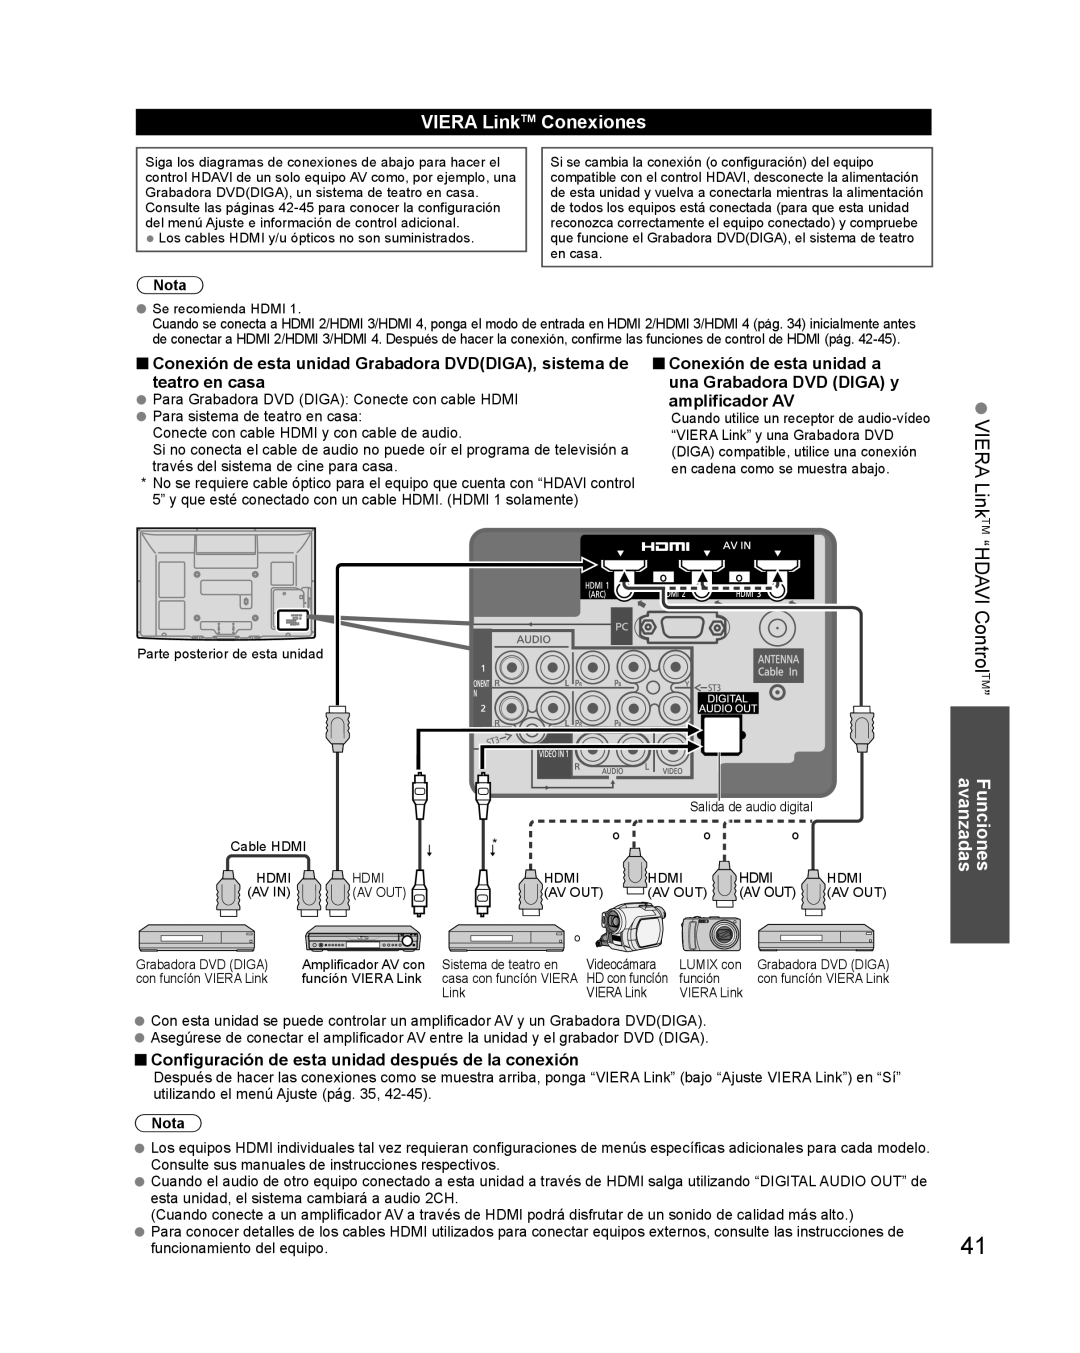 Panasonic TQB2AA0579 “HDAVI ControlTM”, VIERA LinkTM Conexiones, Configuración de esta unidad después de la conexión 